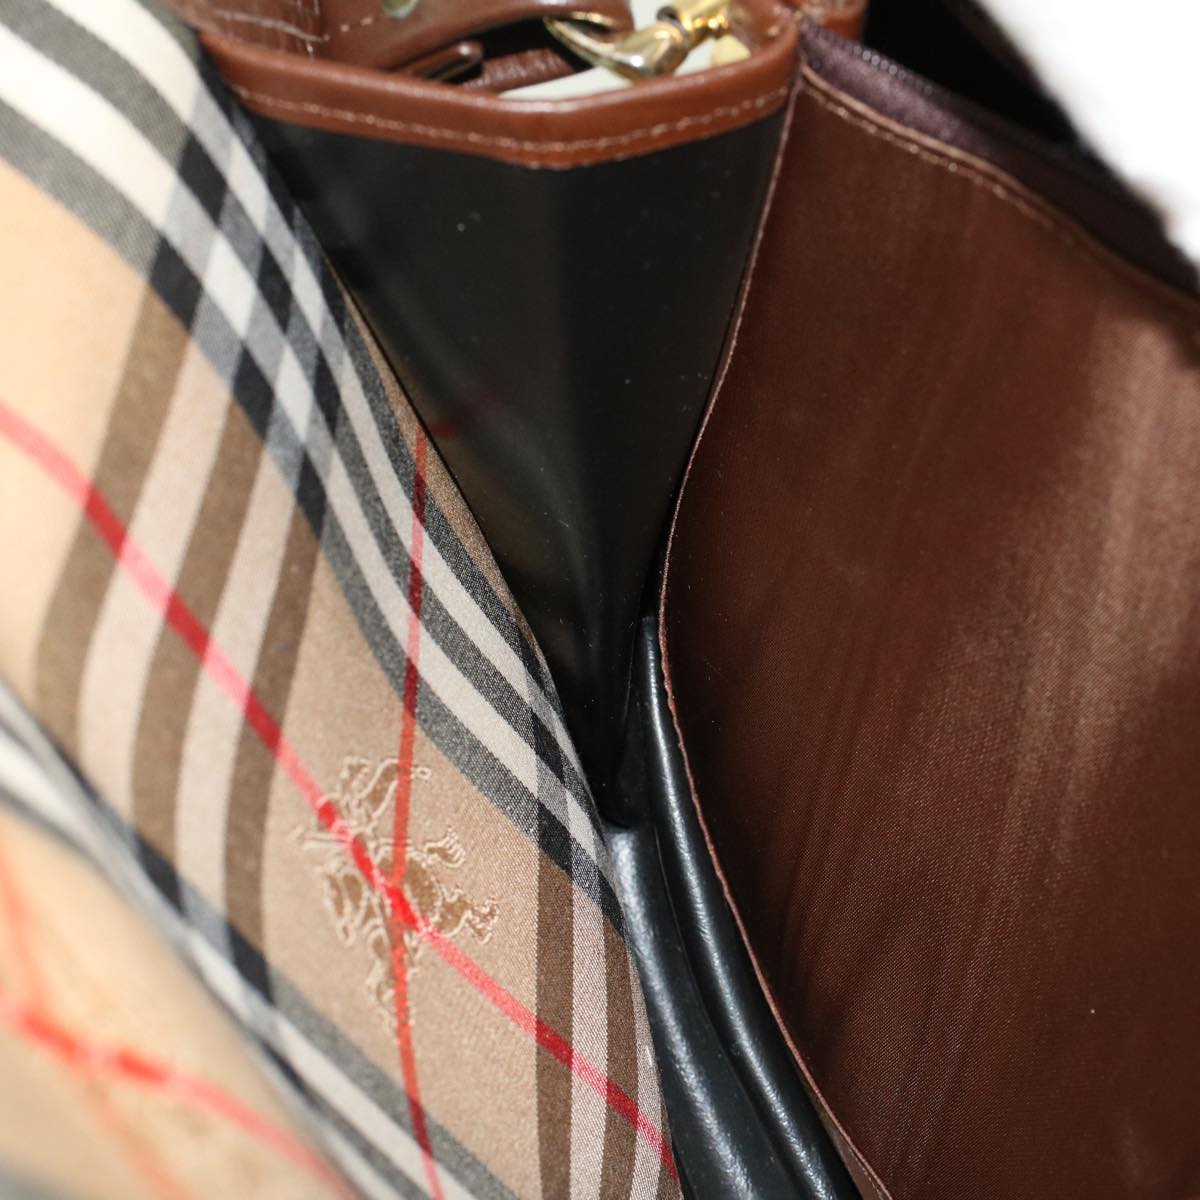 Burberrys Nova Check Shoulder Bag Canvas Beige Brown Auth 48165